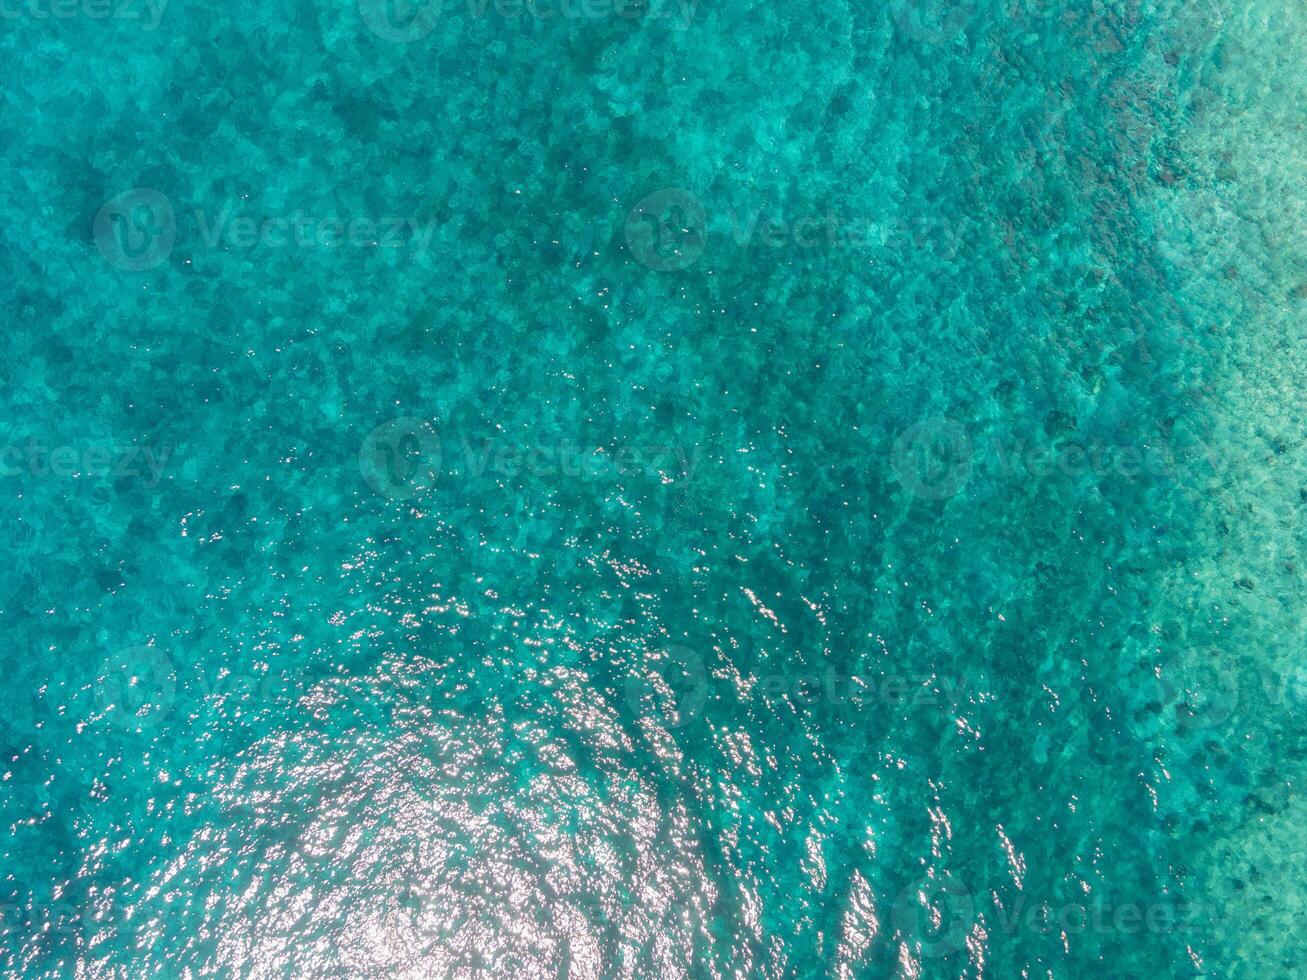 Antenne Aussicht von Karibik Meer im Cozumel, Mexiko foto